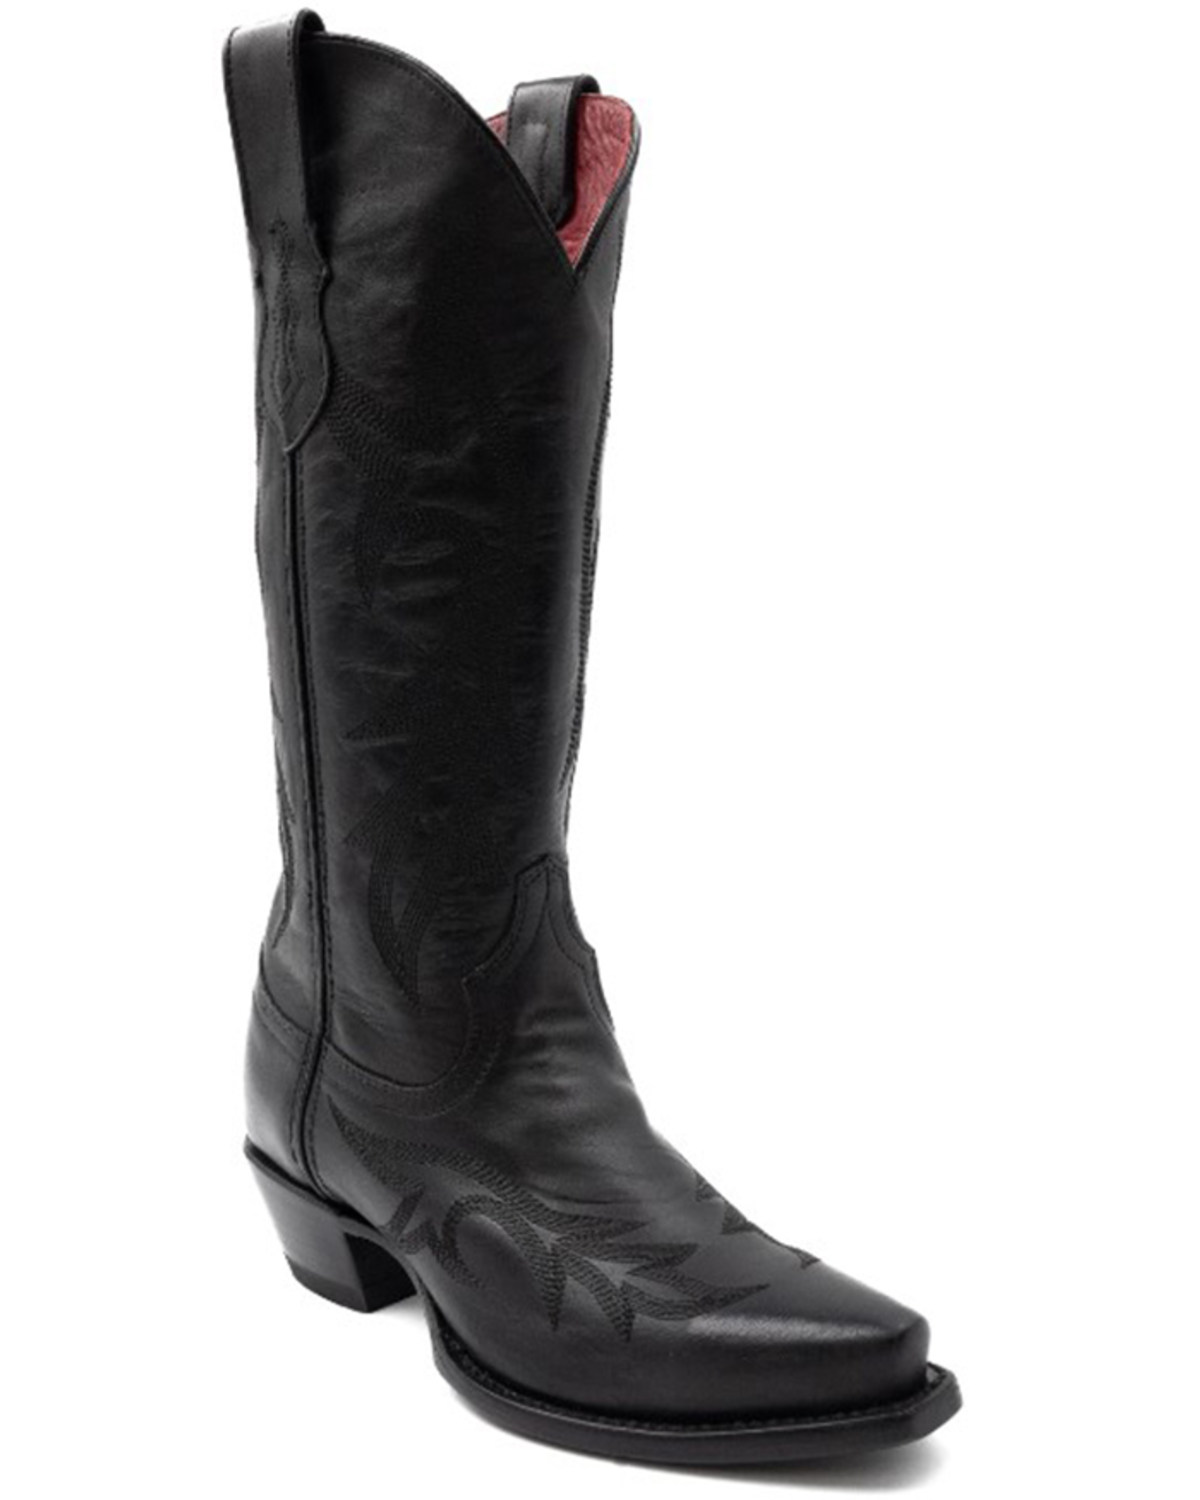 Ferrini Women's Scarlett Western Boots